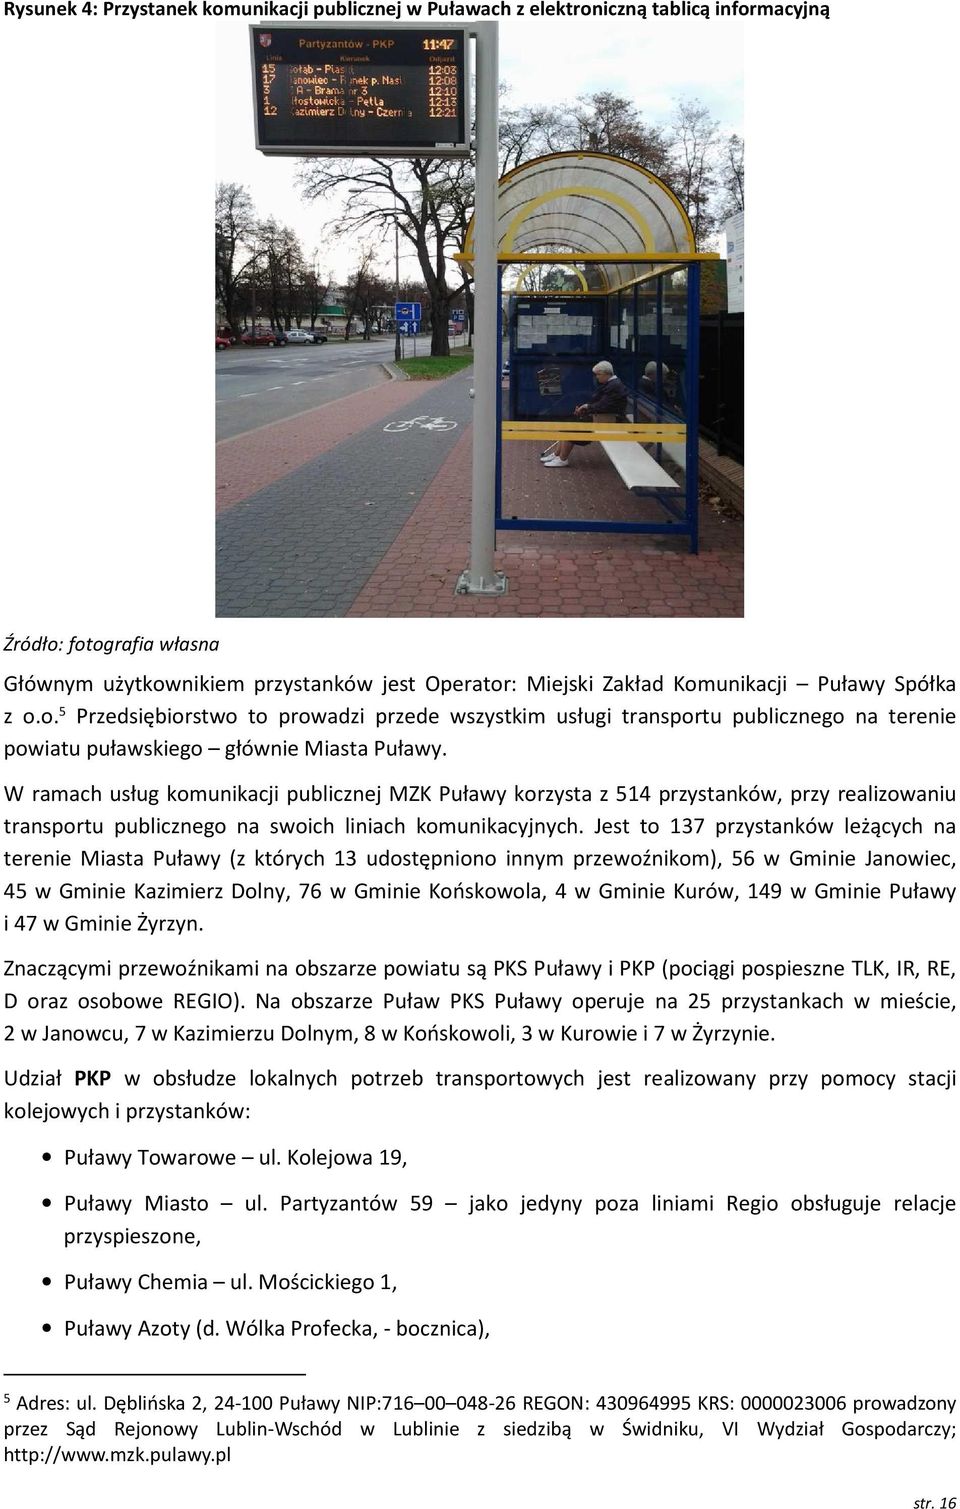 W ramach usług komunikacji publicznej MZK Puławy korzysta z 514 przystanków, przy realizowaniu transportu publicznego na swoich liniach komunikacyjnych.